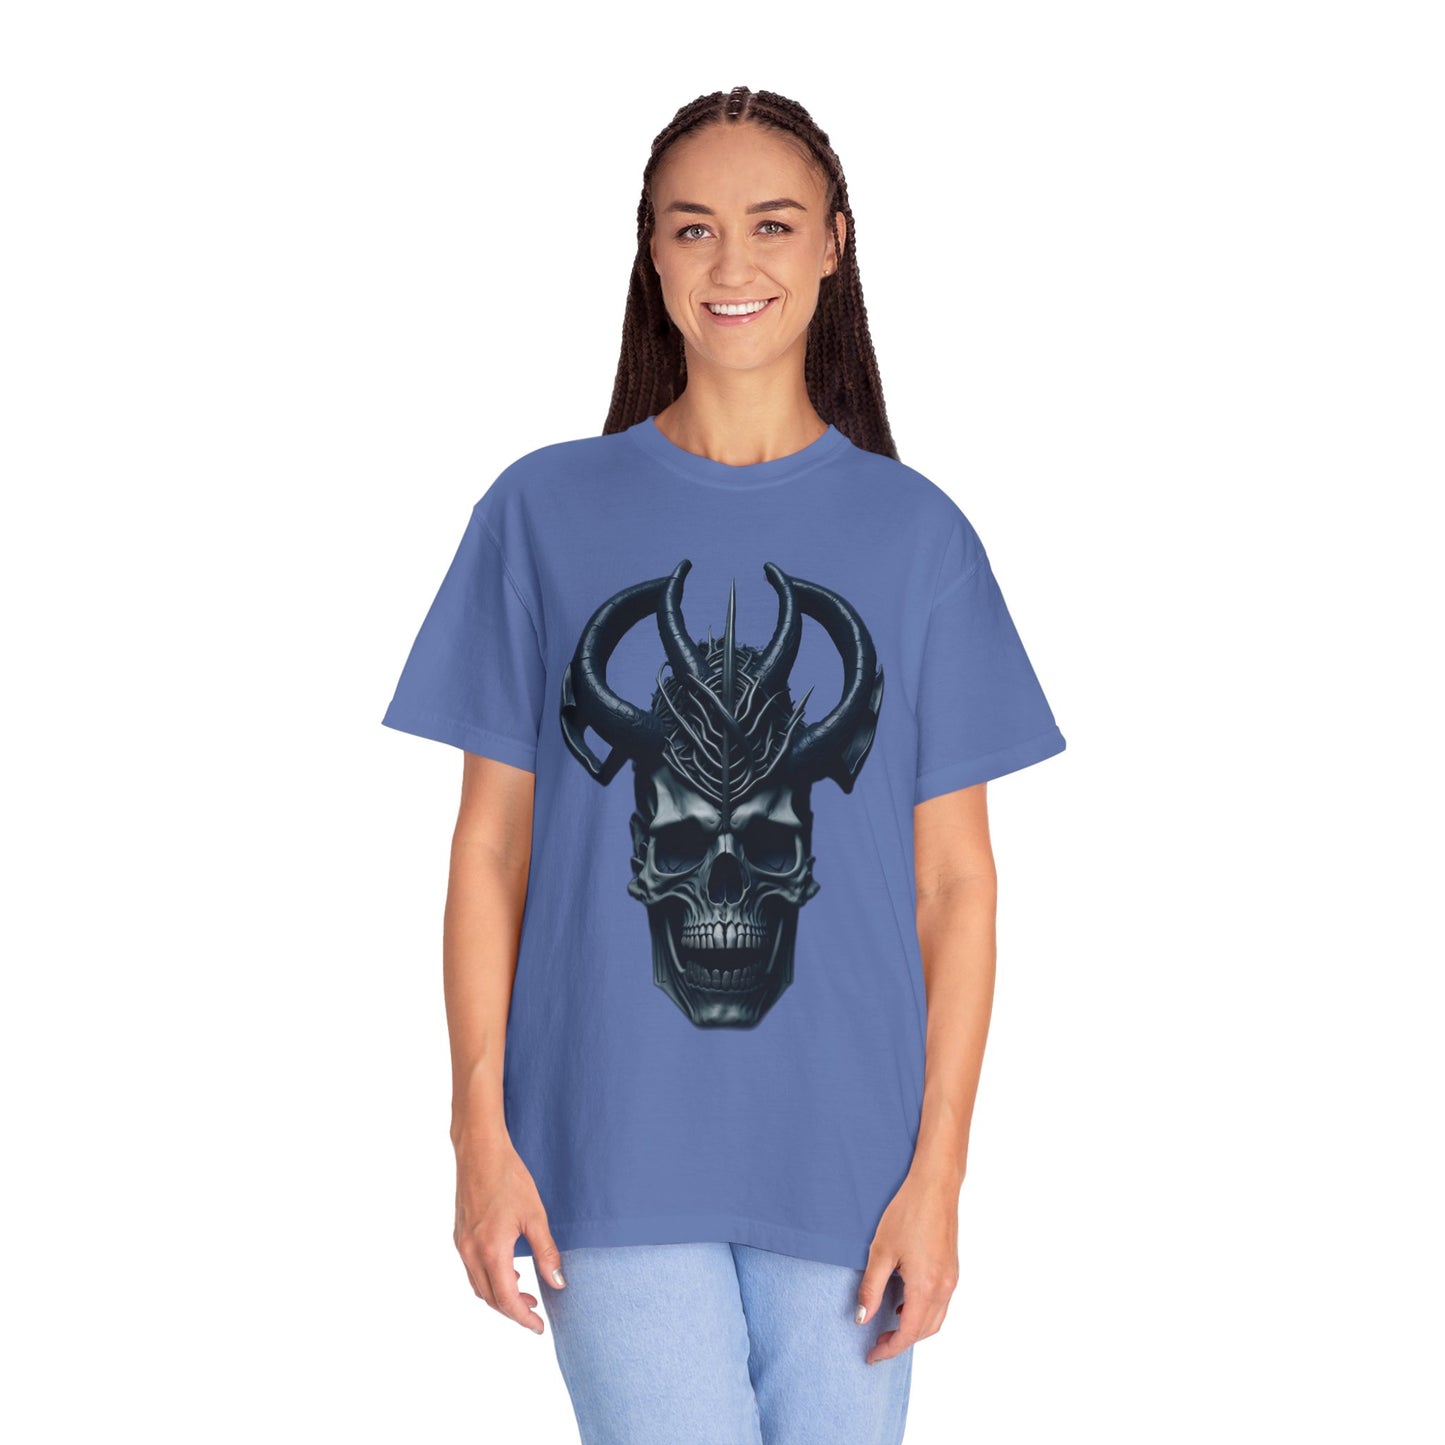 Unisex T-shirt - Skull